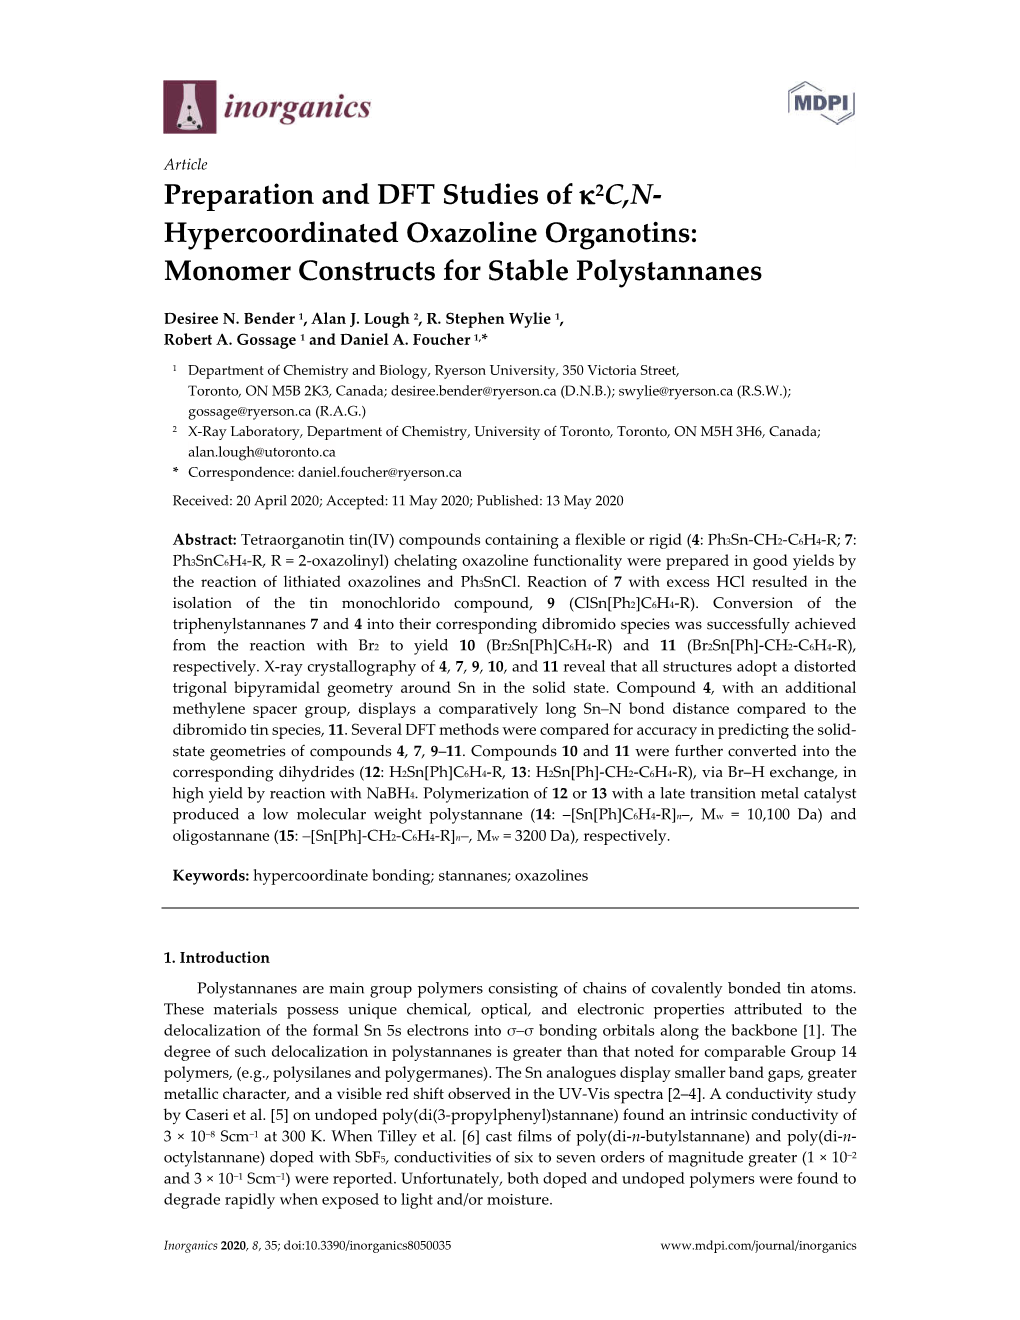 Preparation and DFT Studies of Κ2c,N